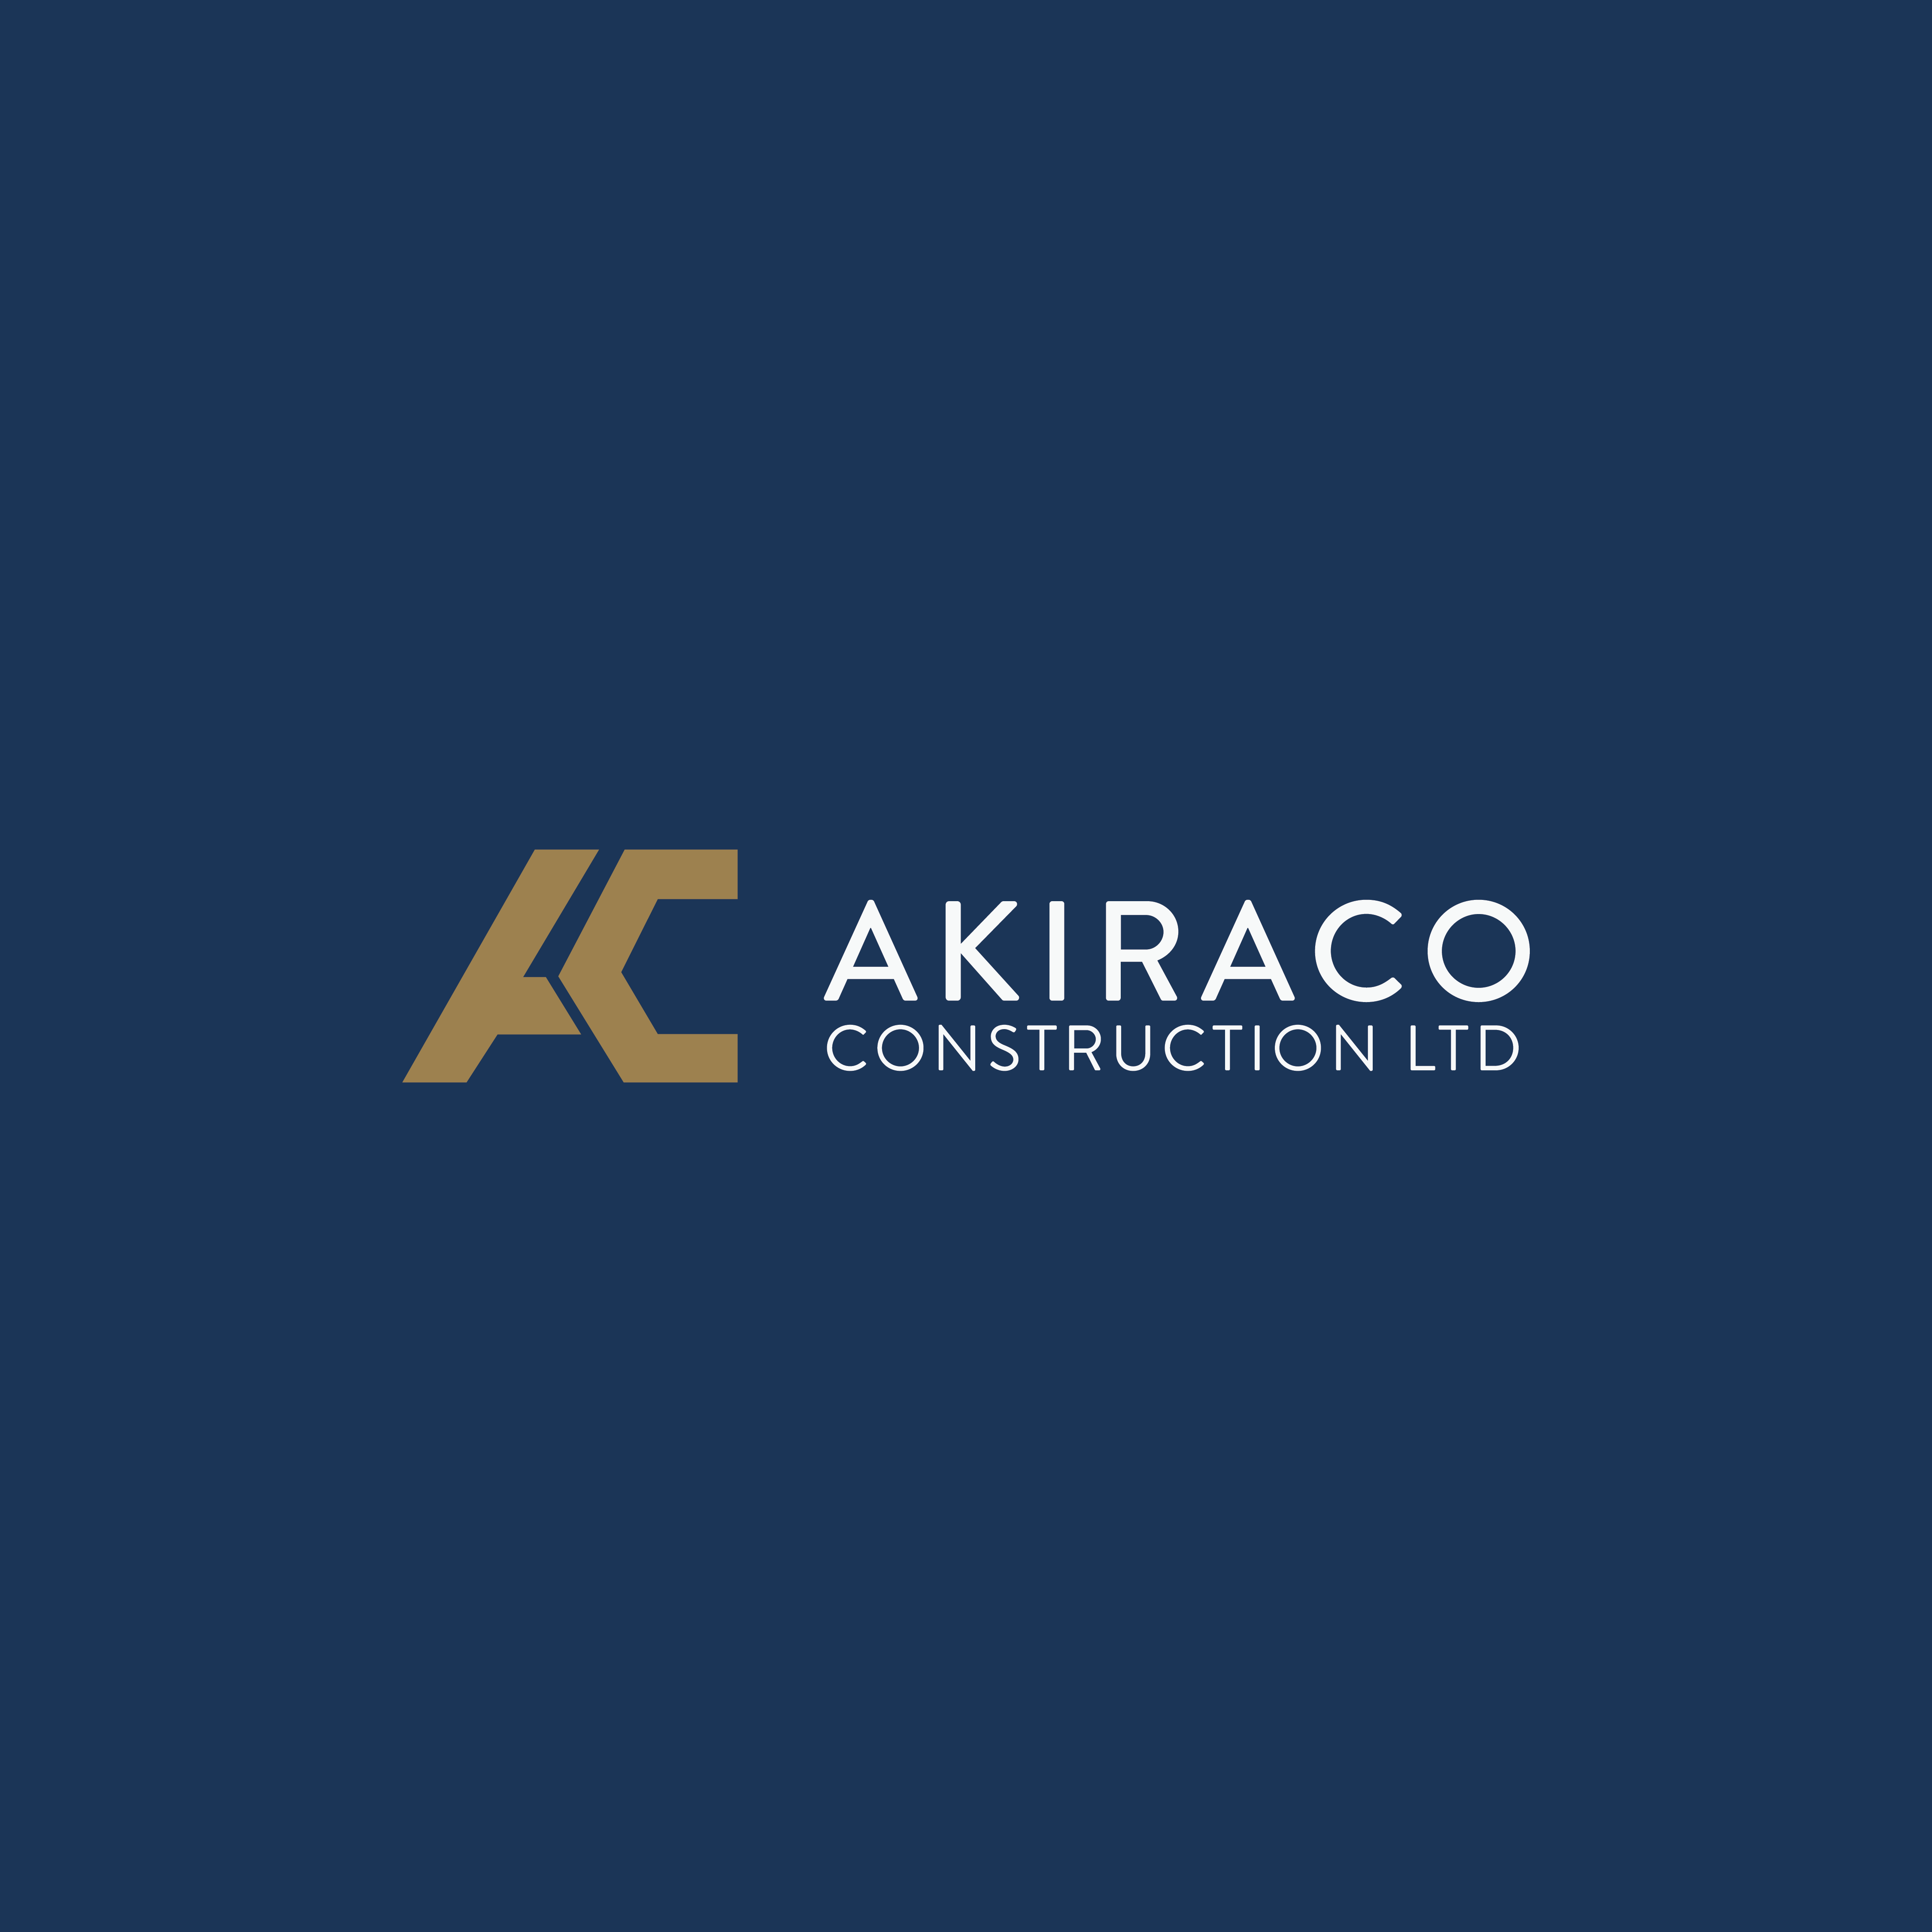 Akiraco Construction's logo